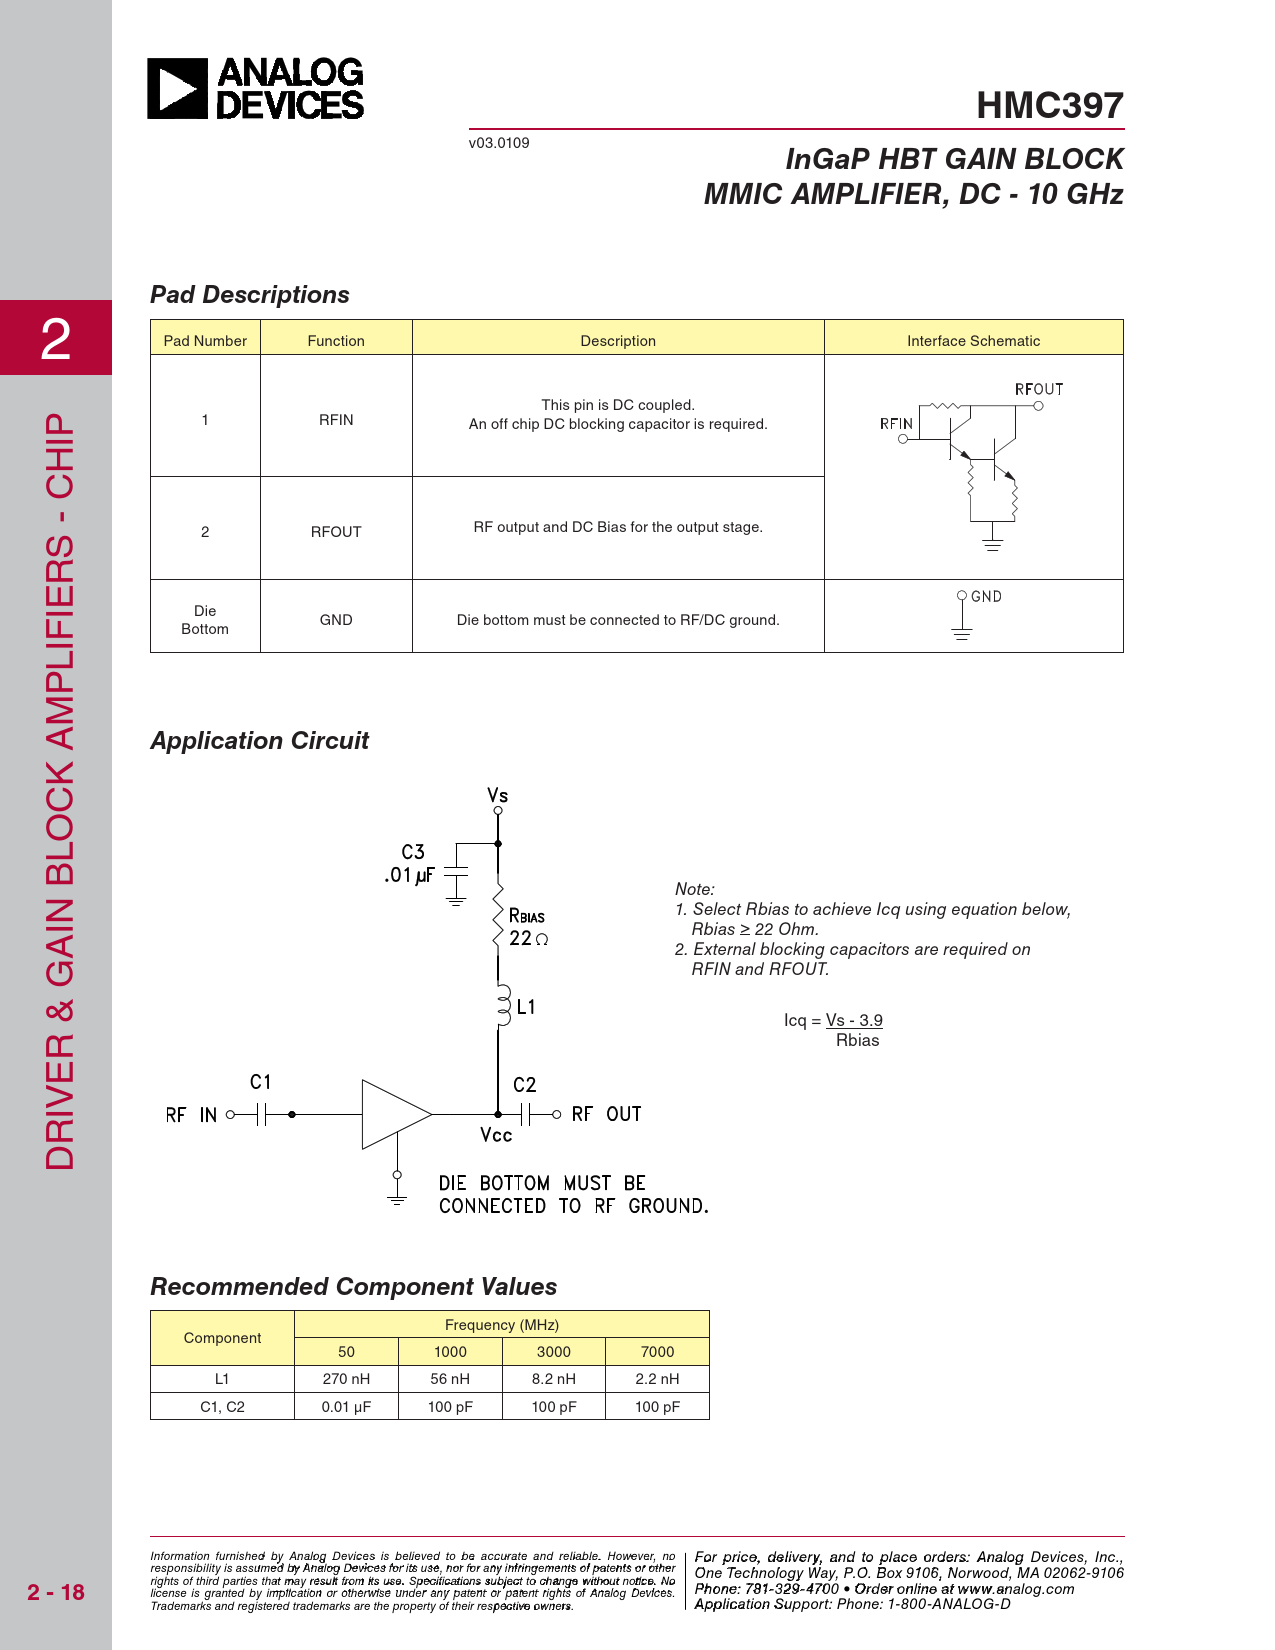 HMC397 InGaP HBT GAIN BLOCK MMIC AMPLIFIER, DC - 10 GHz Pad Descriptions Application Circuit Recommended Component Values